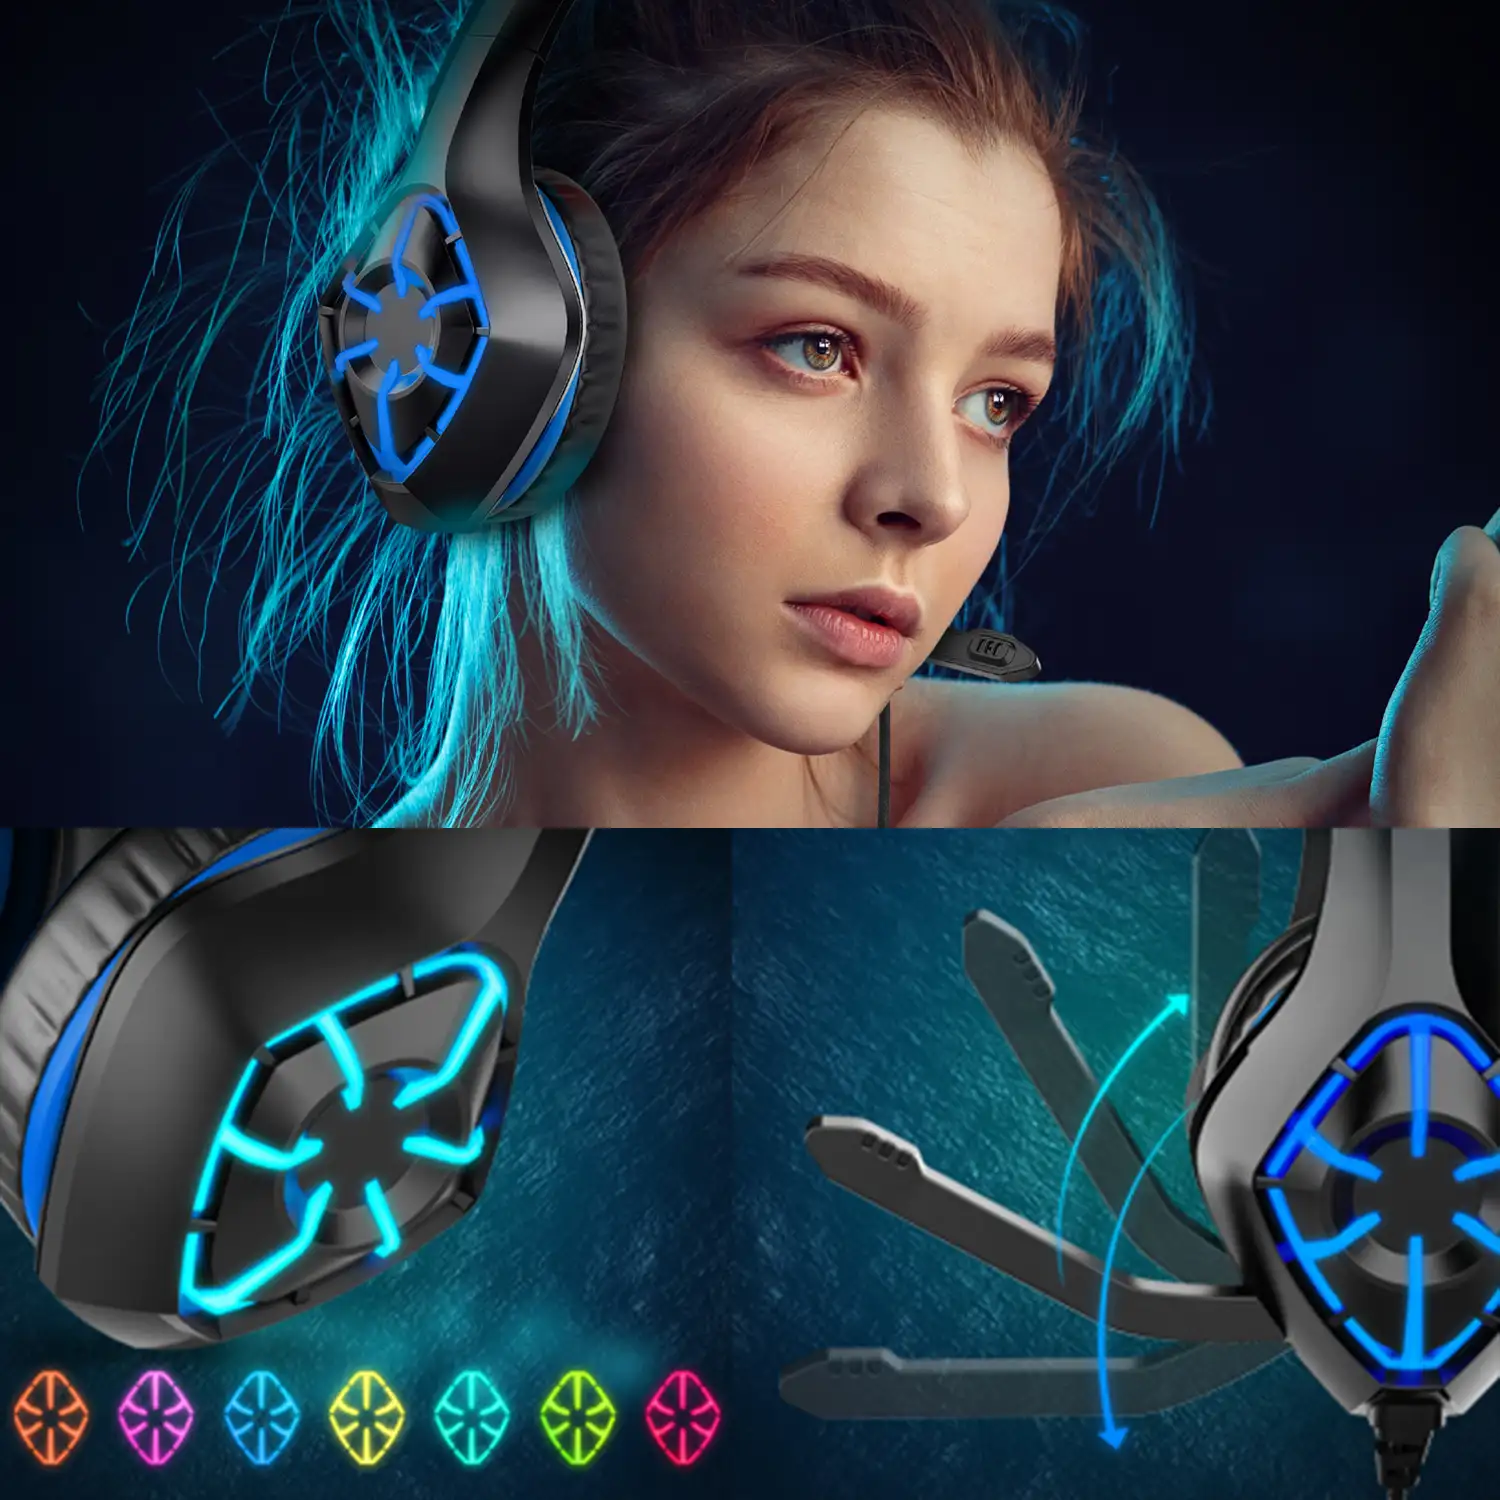 Auriculares Gamer Gamin Pc Ps4 Xbox Con Microfono - Azul